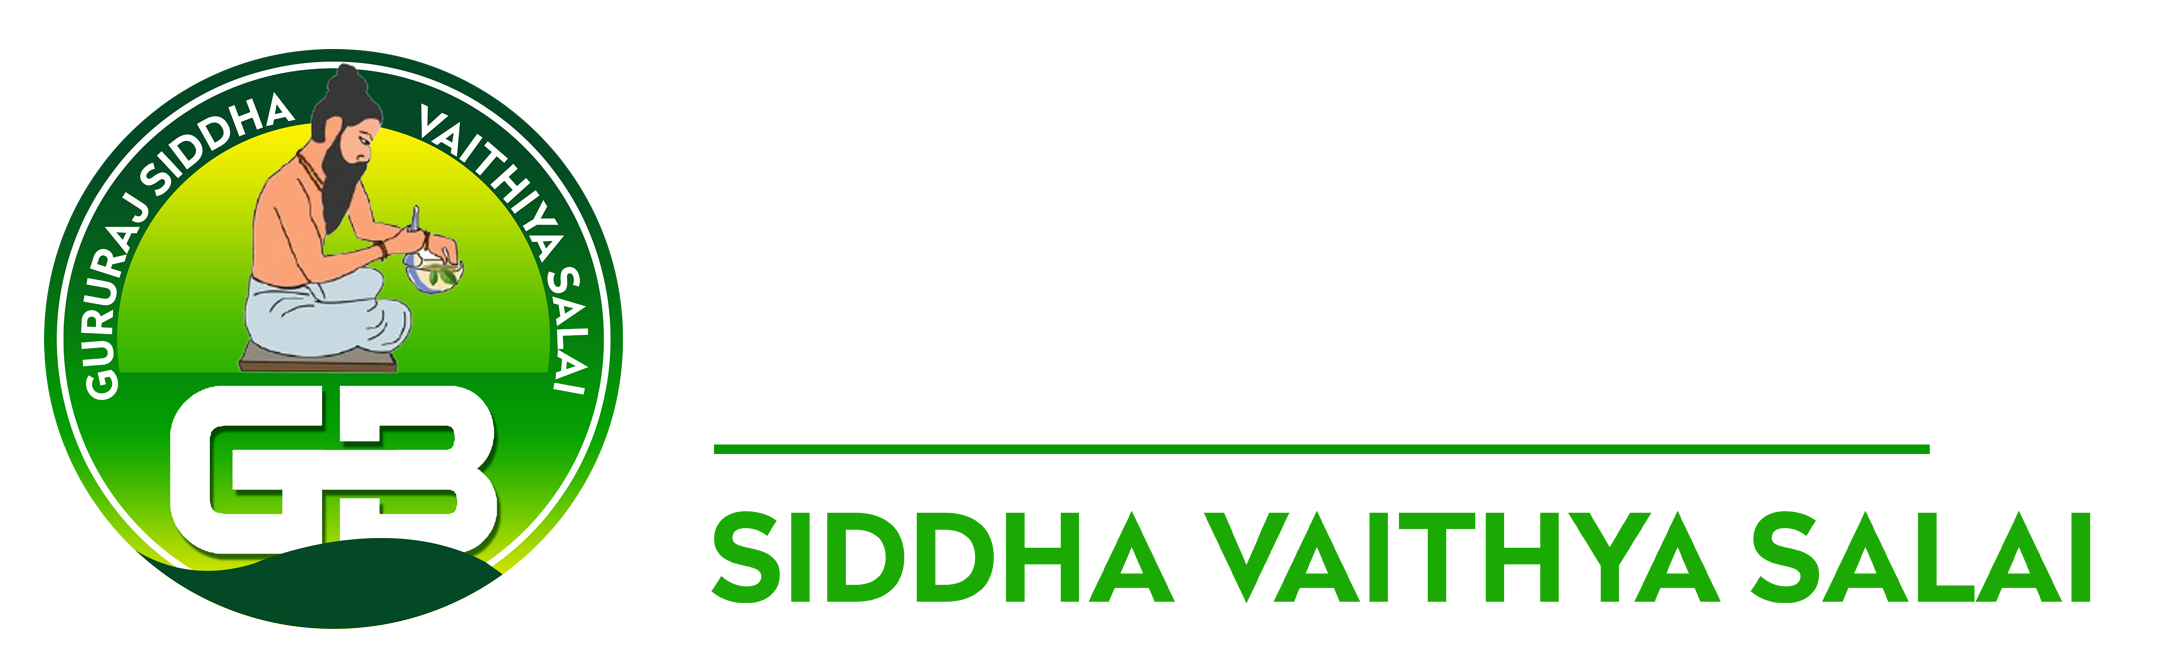 SKM Siddha and Ayurveda